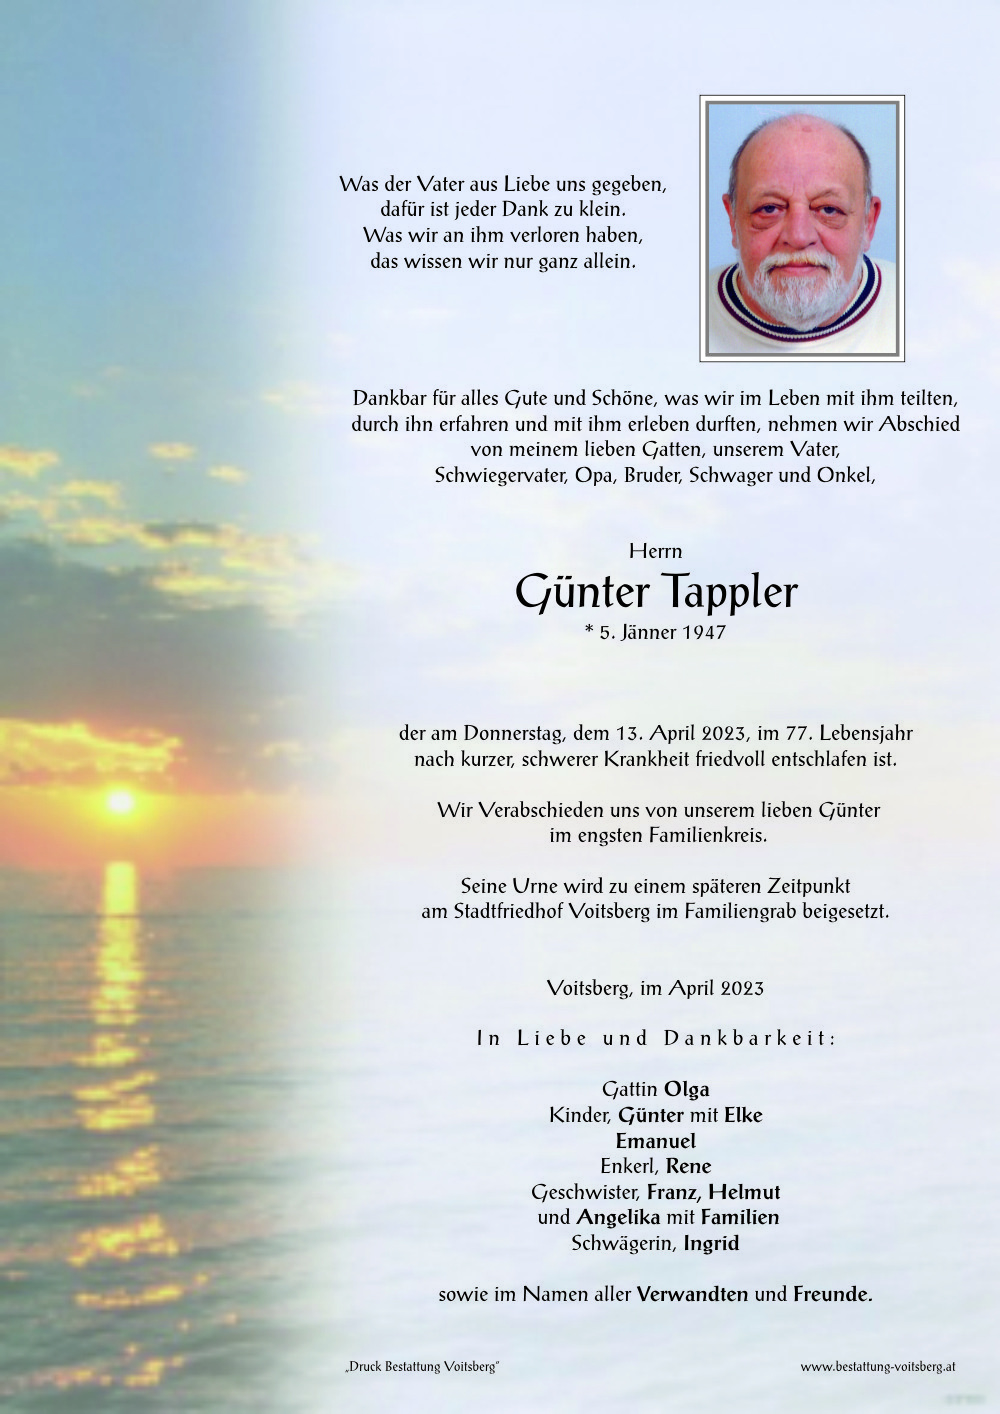 Günter Tappler